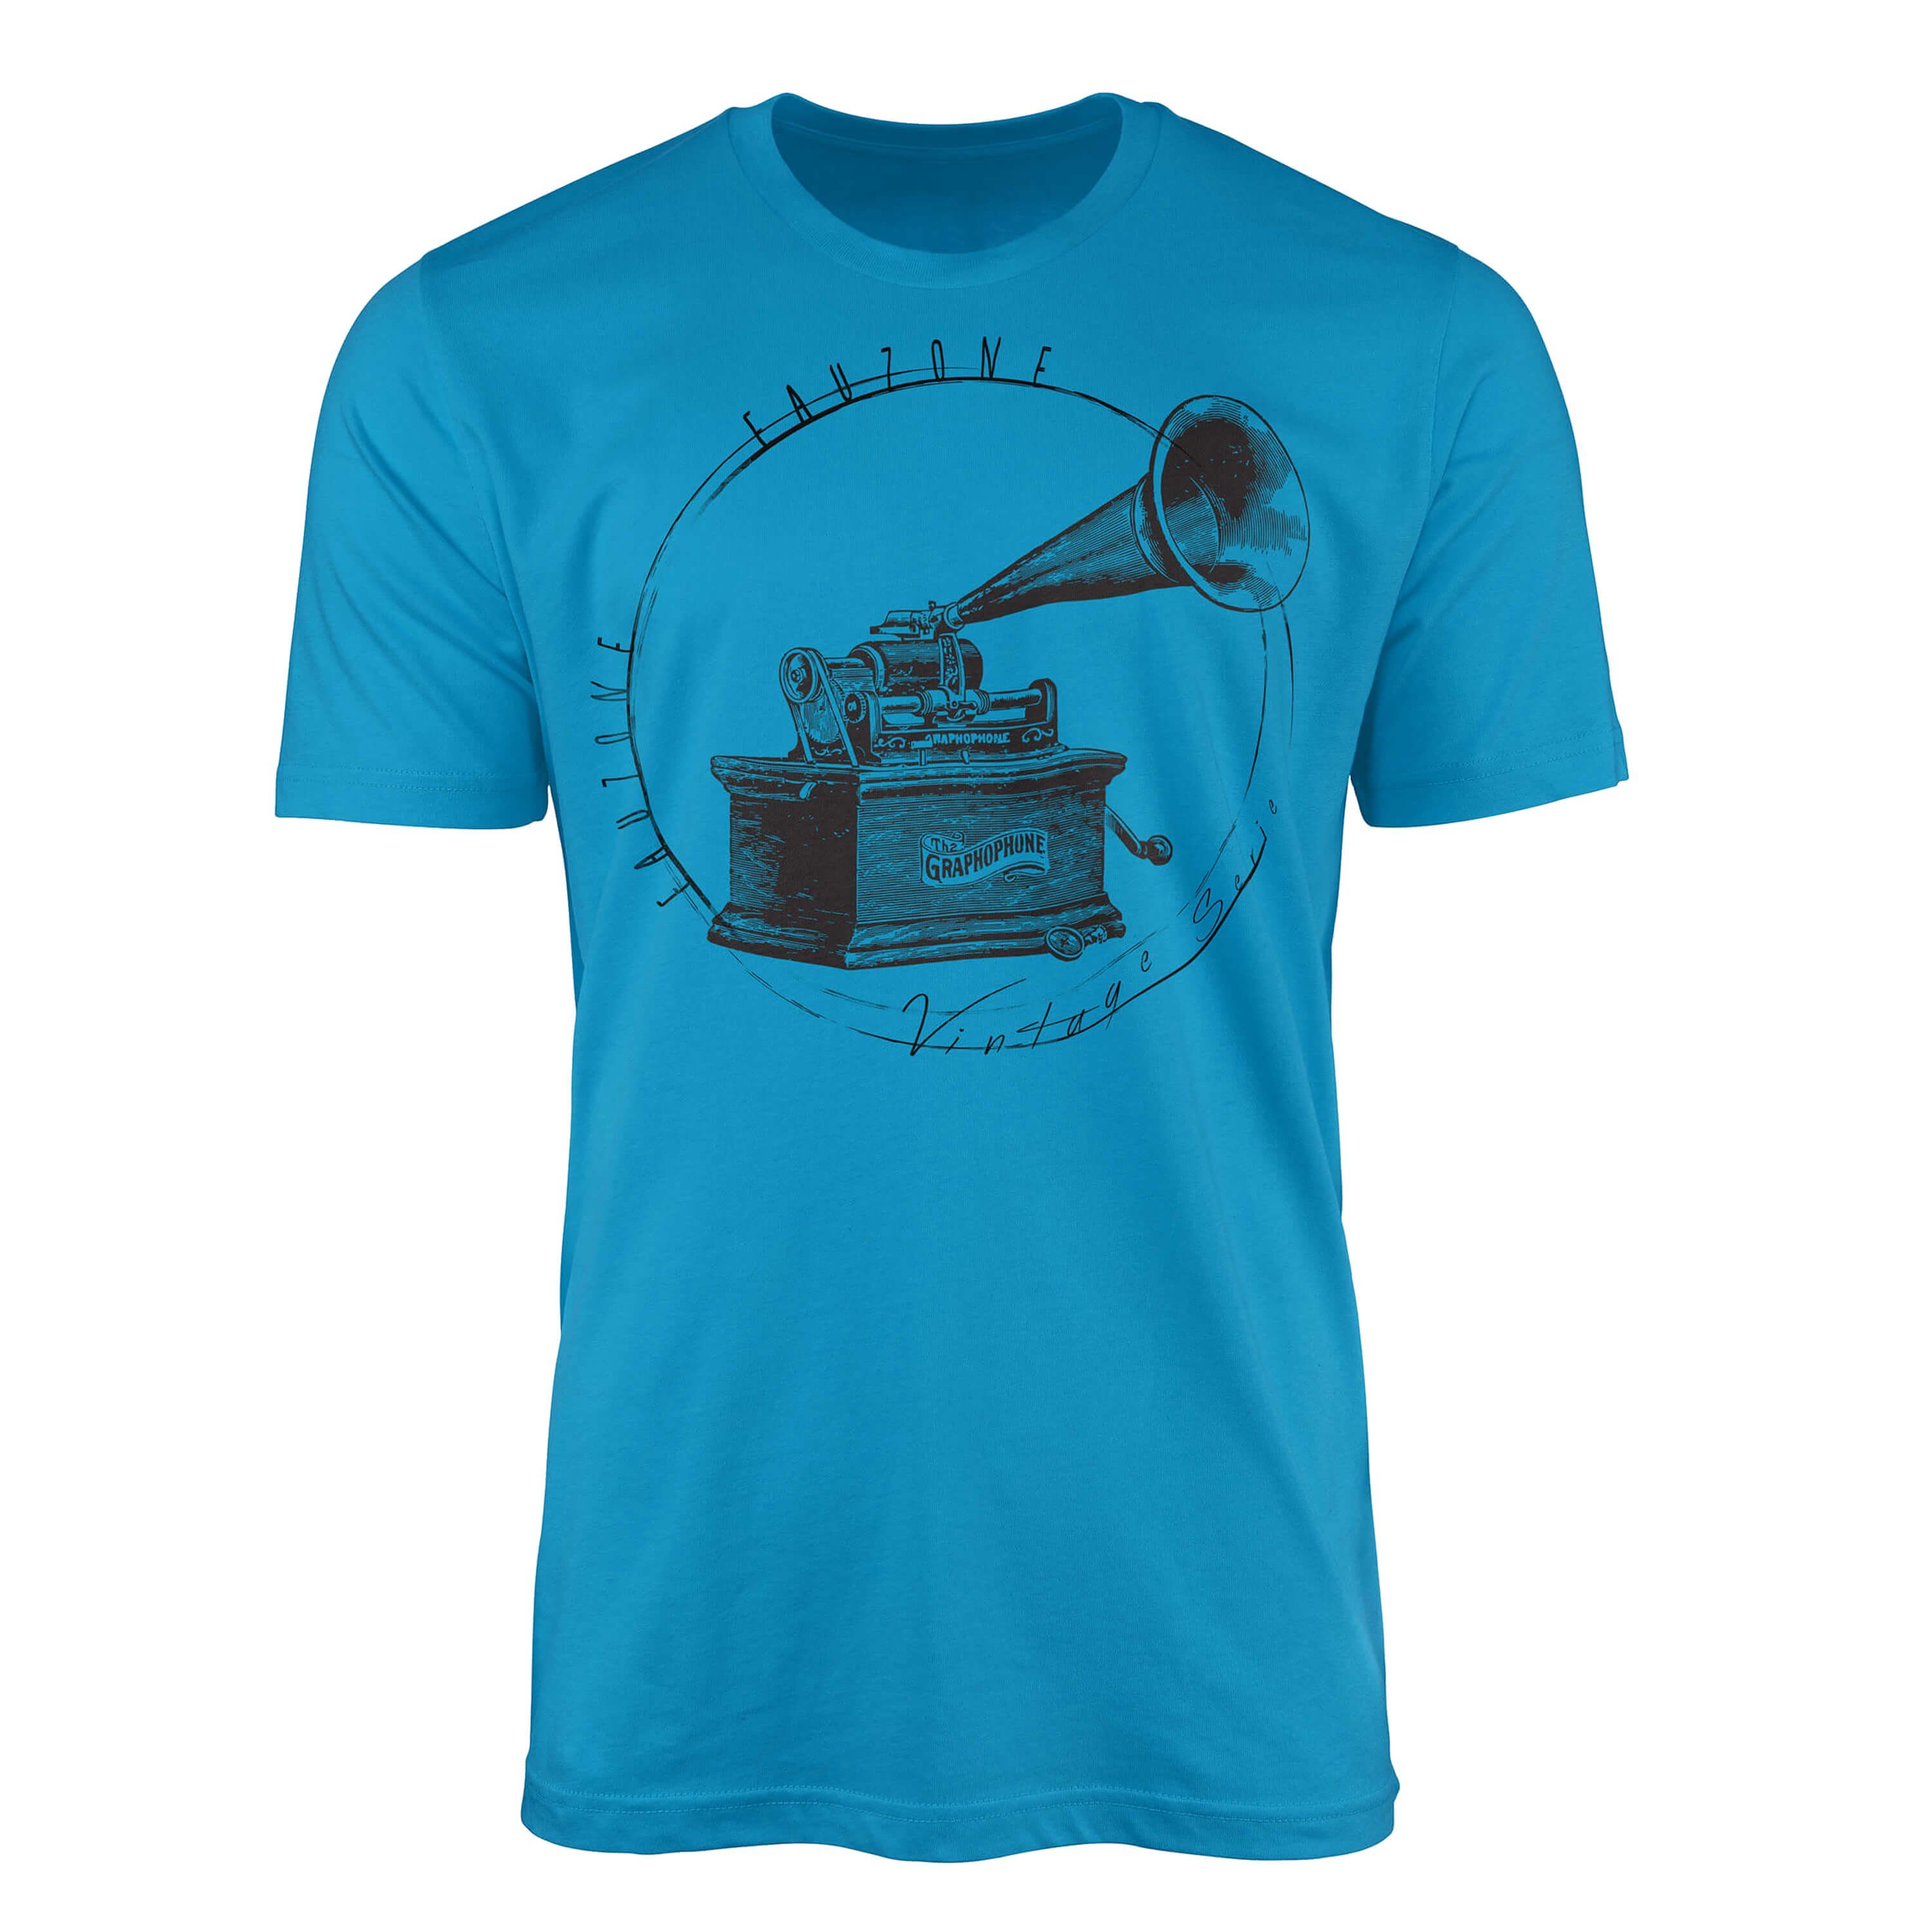 Sinus Art T-Shirt Vintage Herren T-Shirt Grammophon Atoll